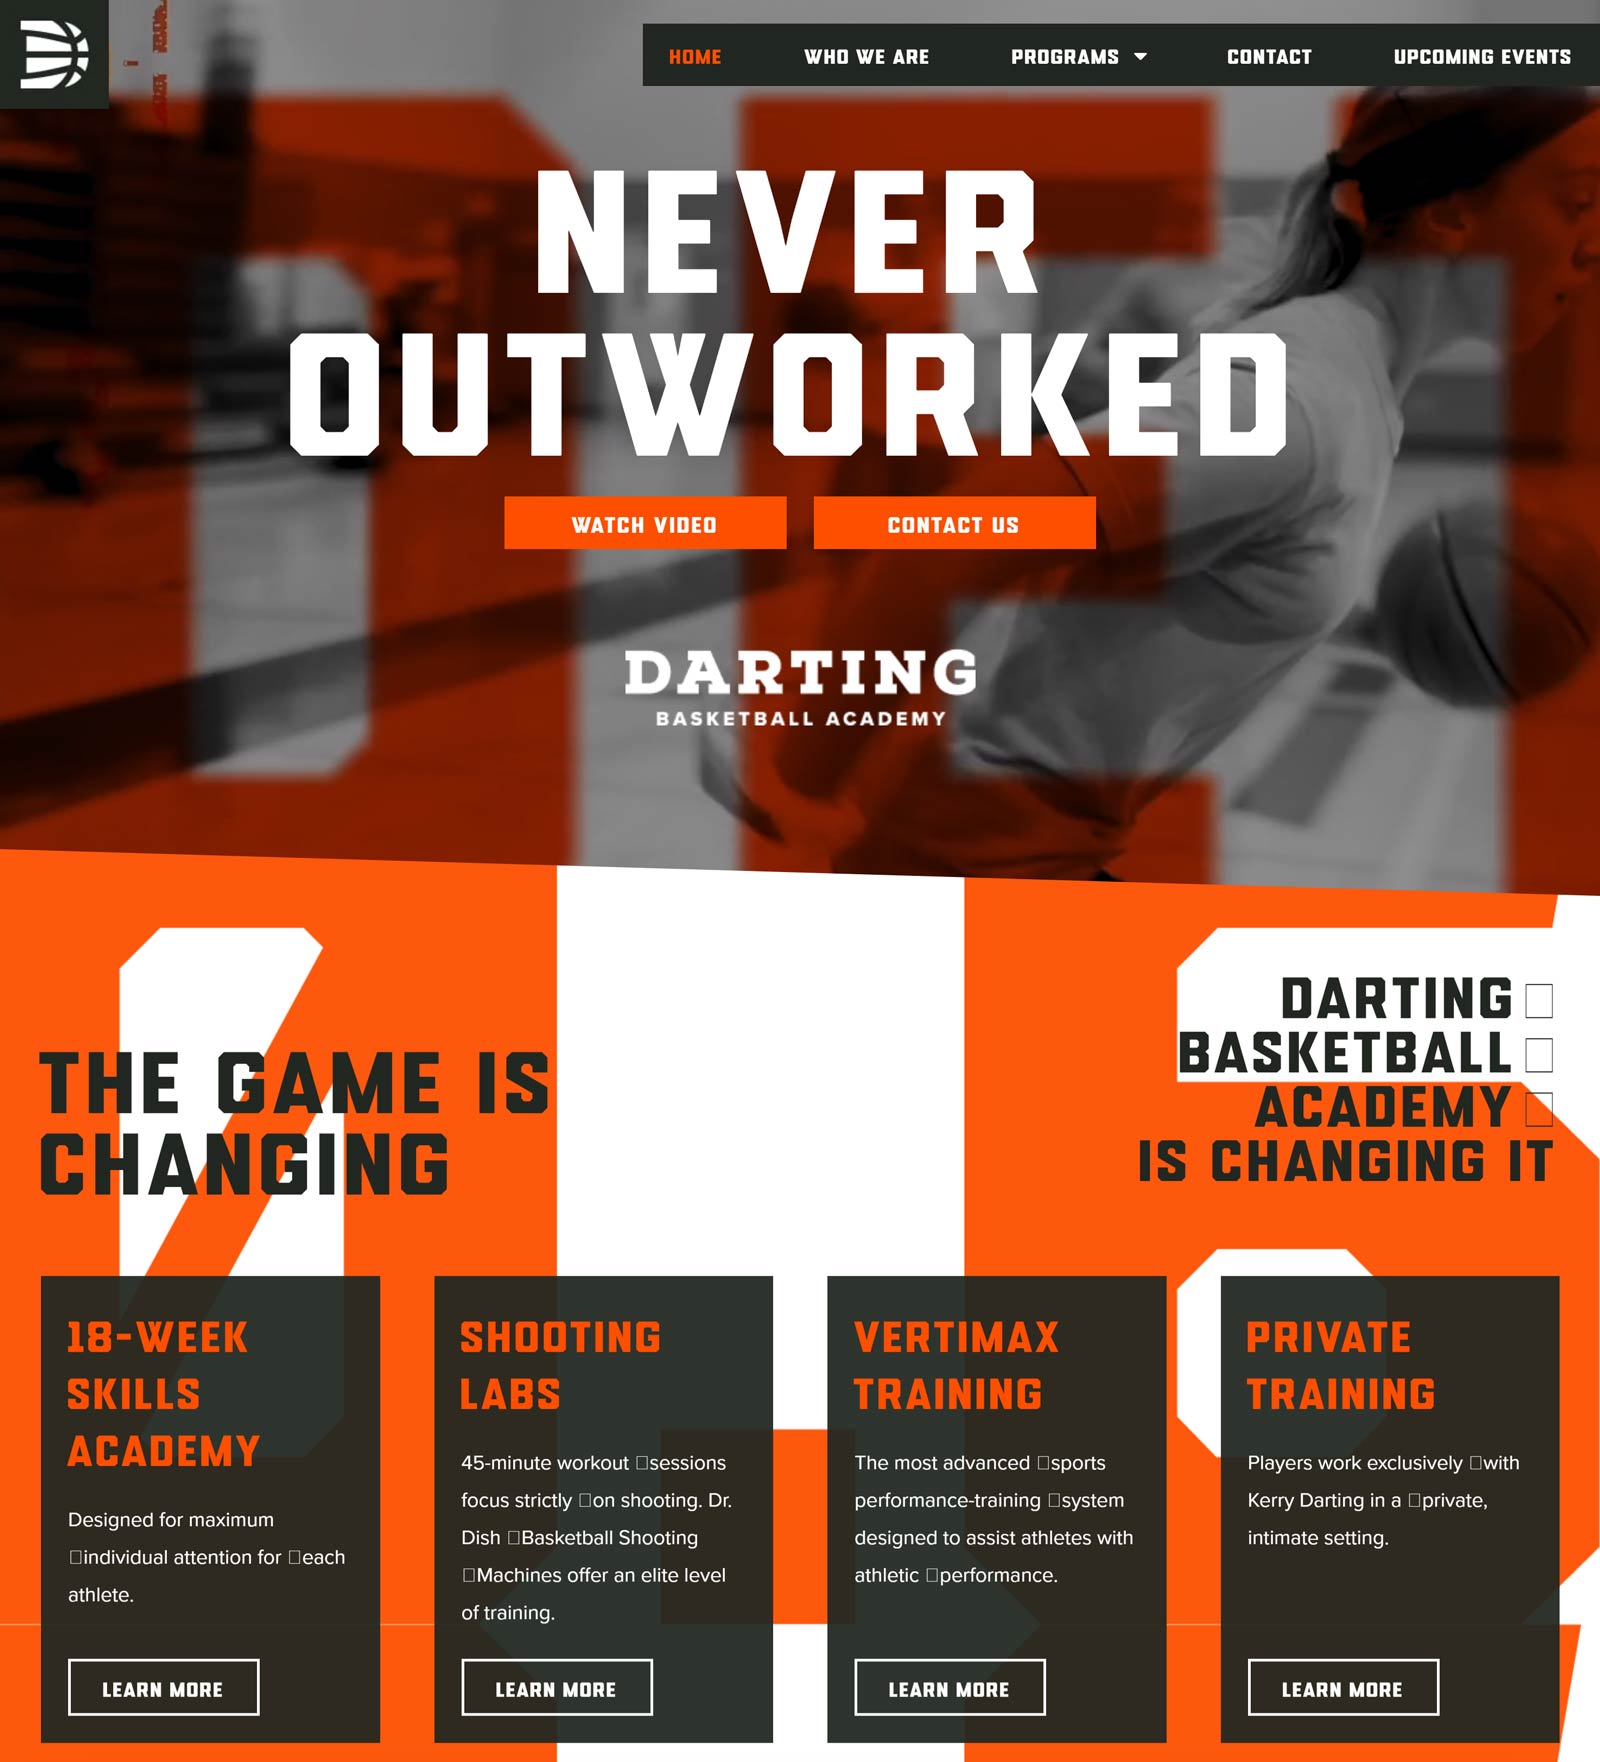 Darting Basketball Academy